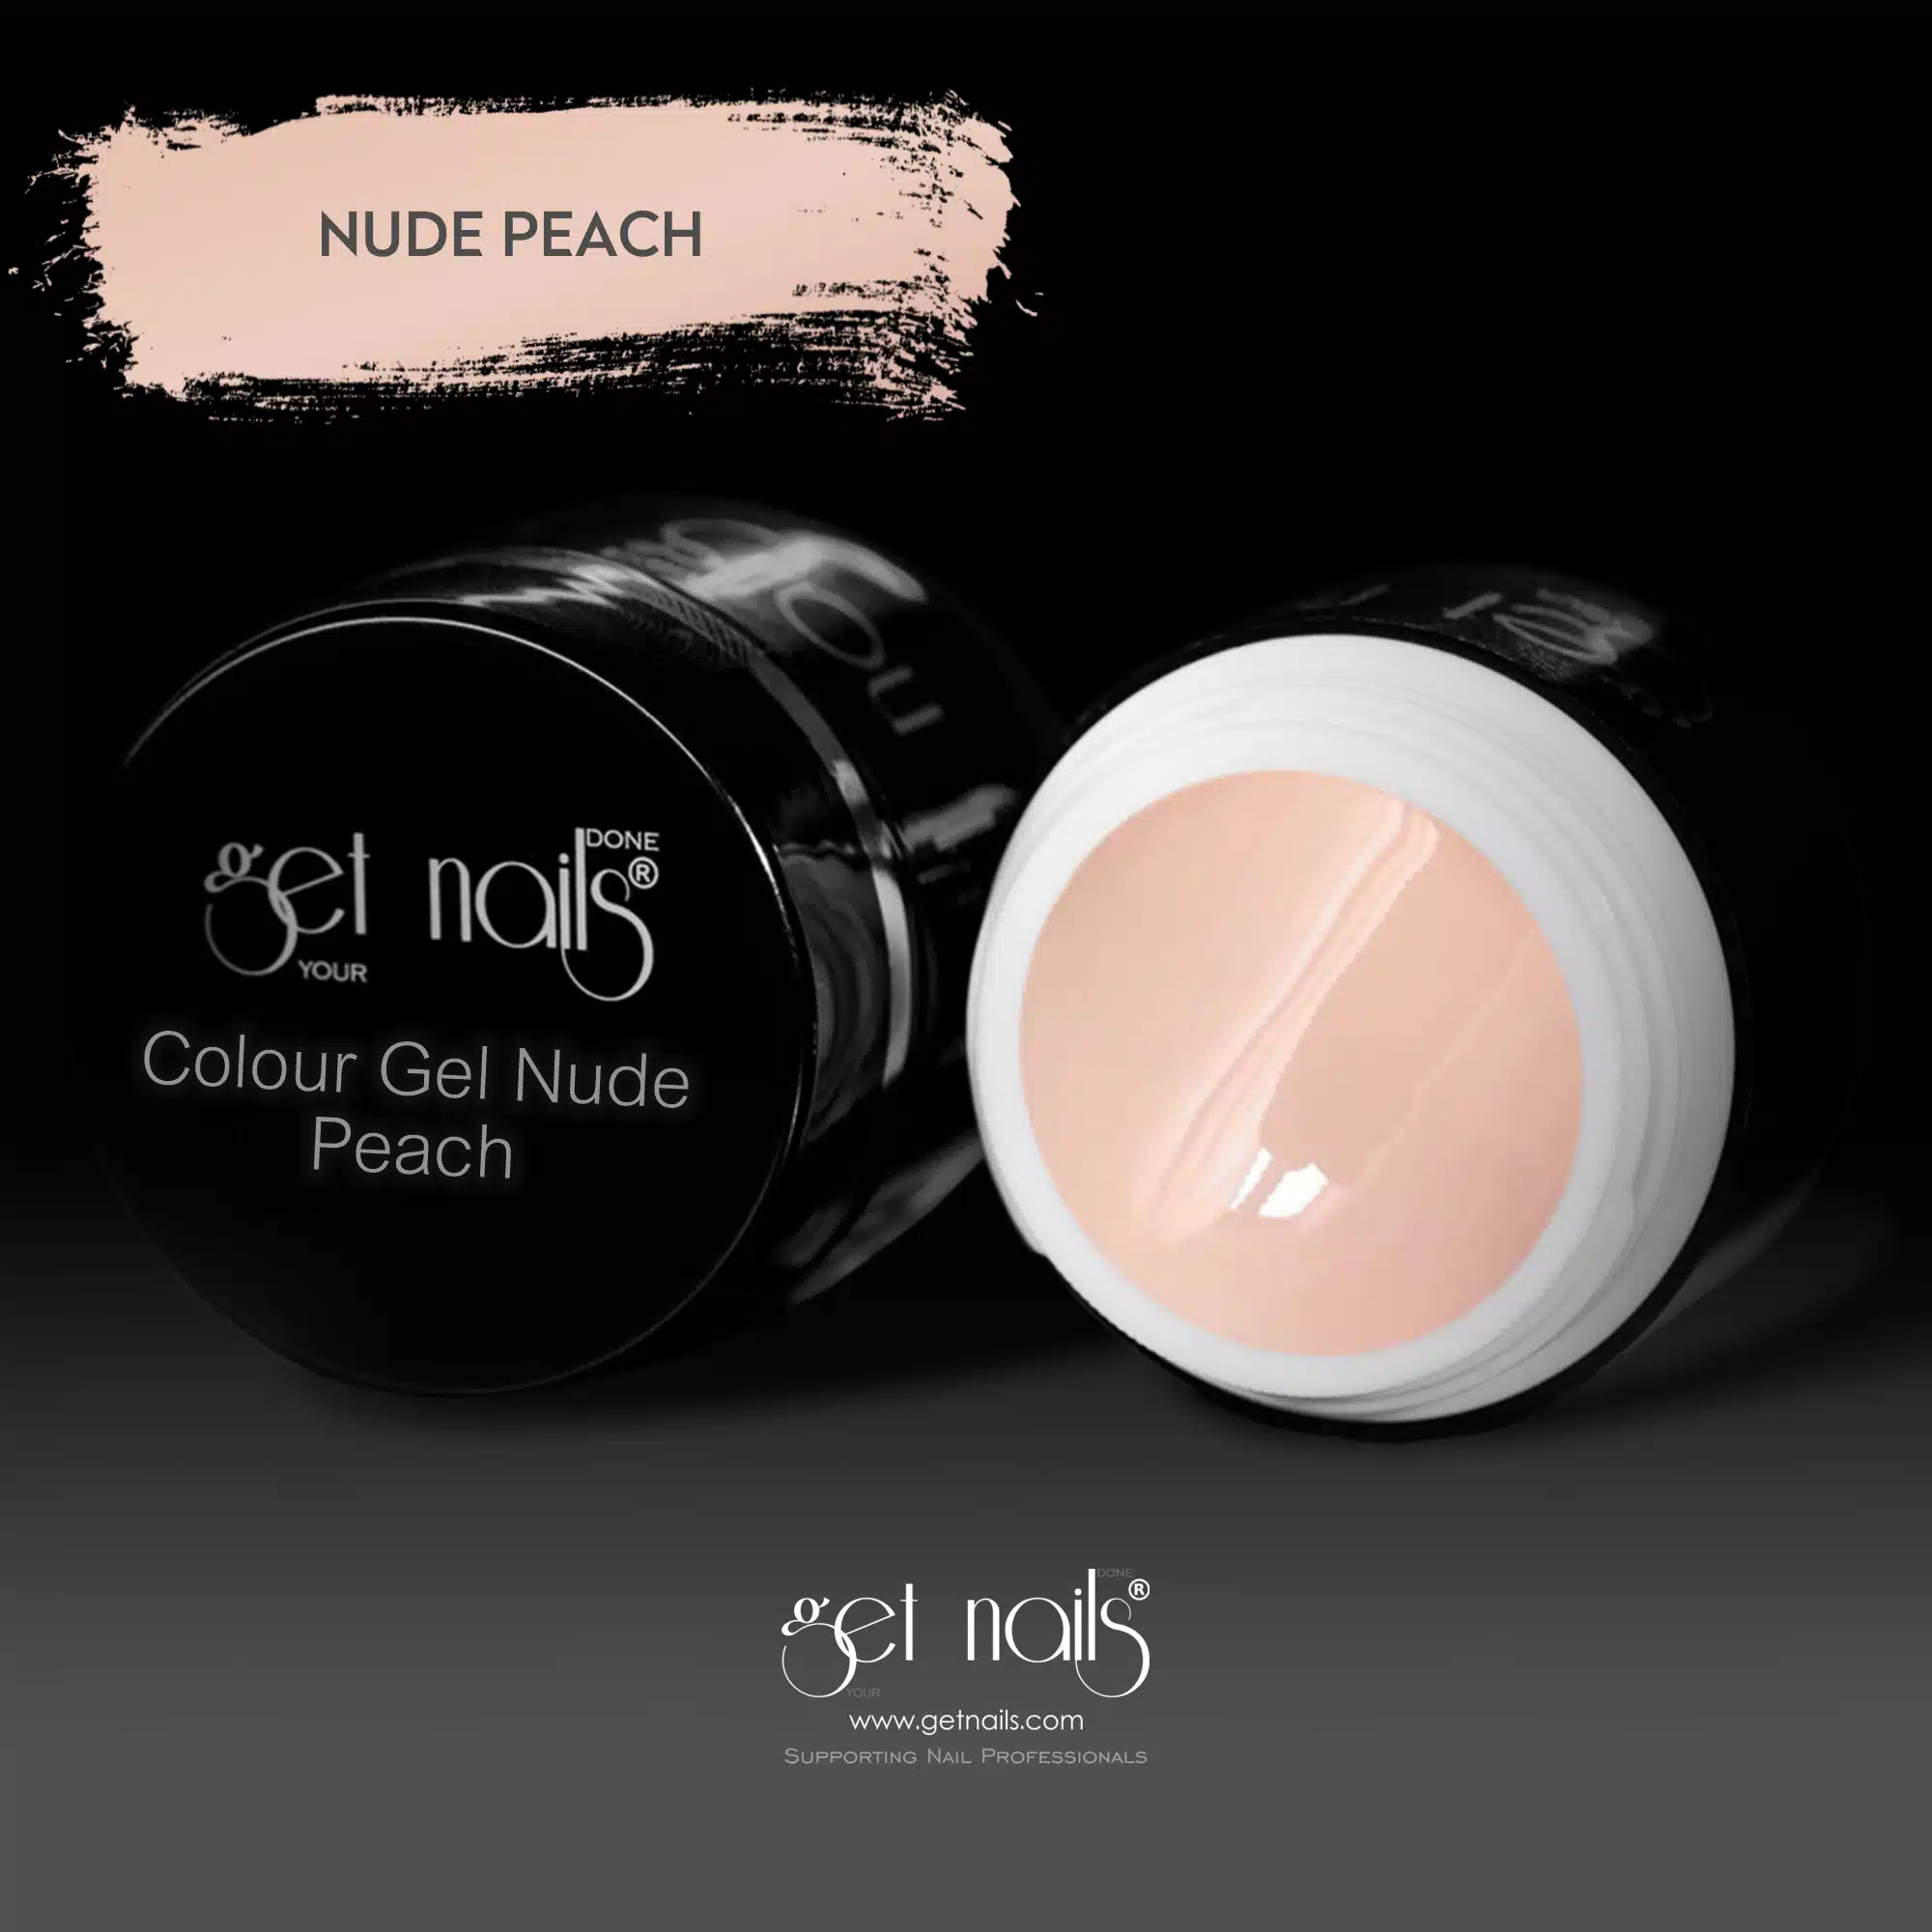 Get Nails Austria - Colour Gel Nude Peach 5g